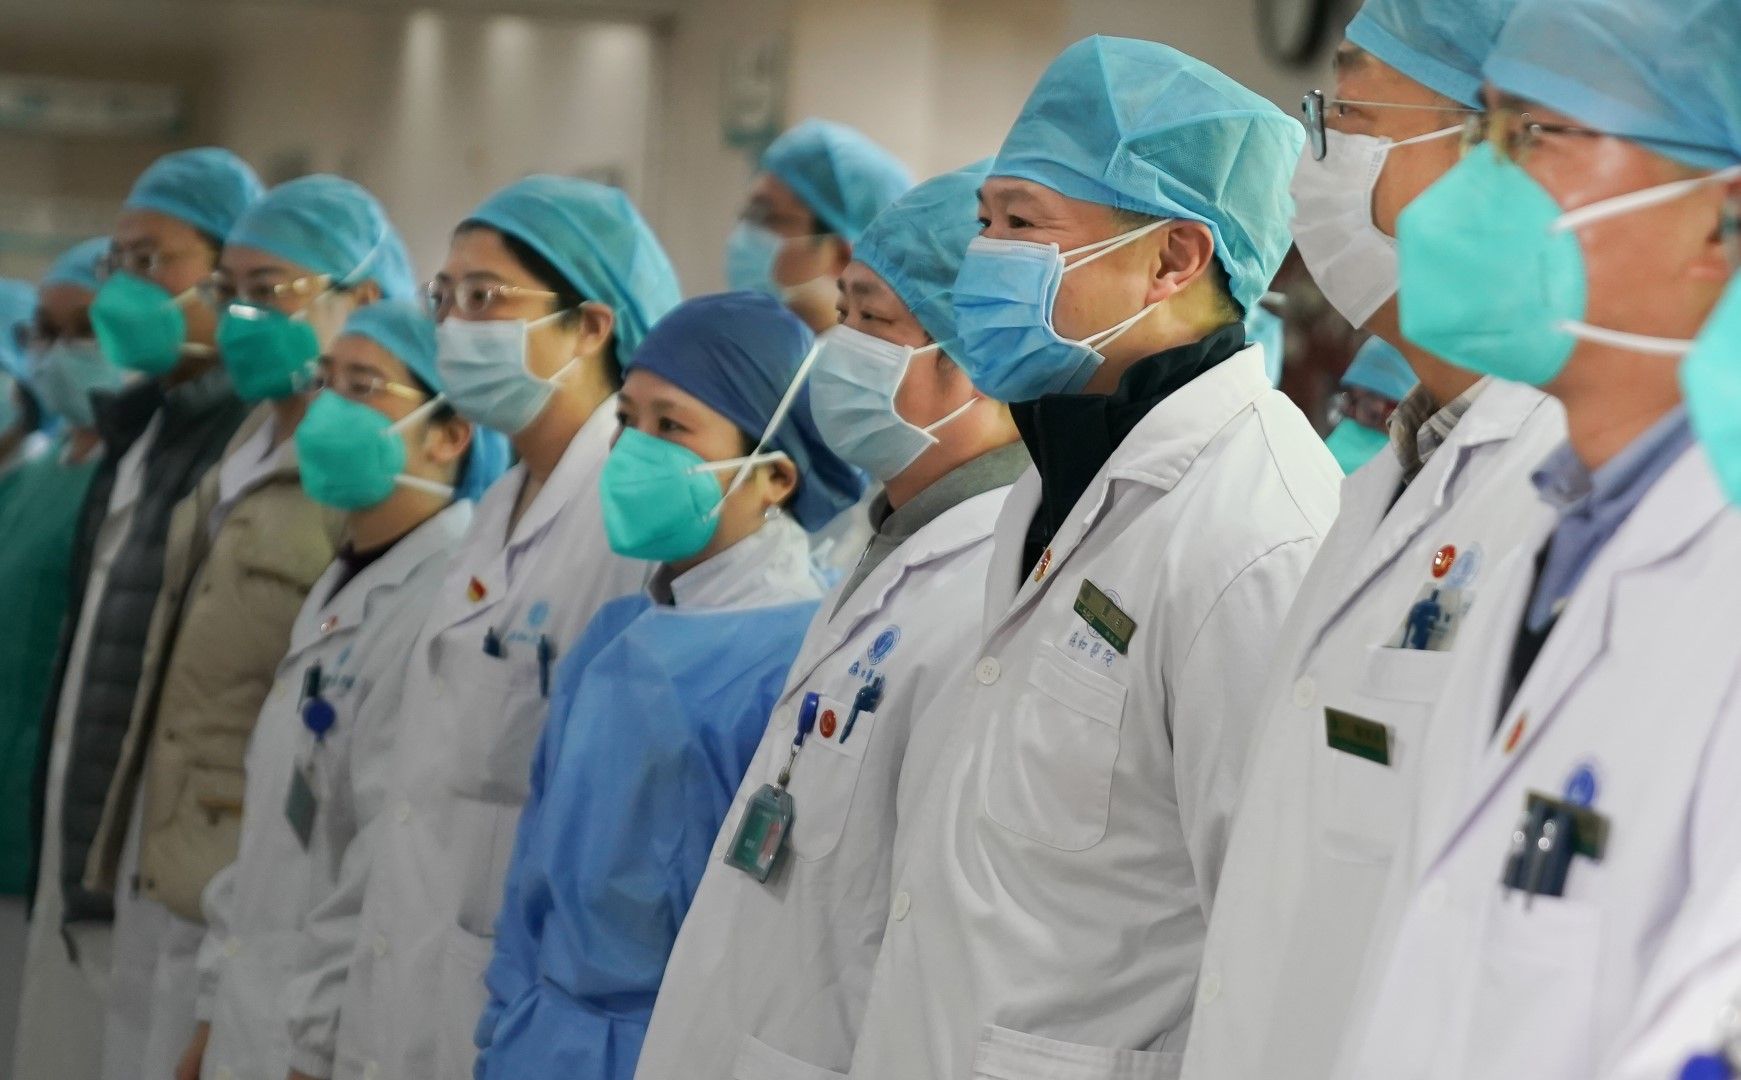 Китайски учени и лекари сформираха кризисен екип за намиране на решение срещу новия коронавирус